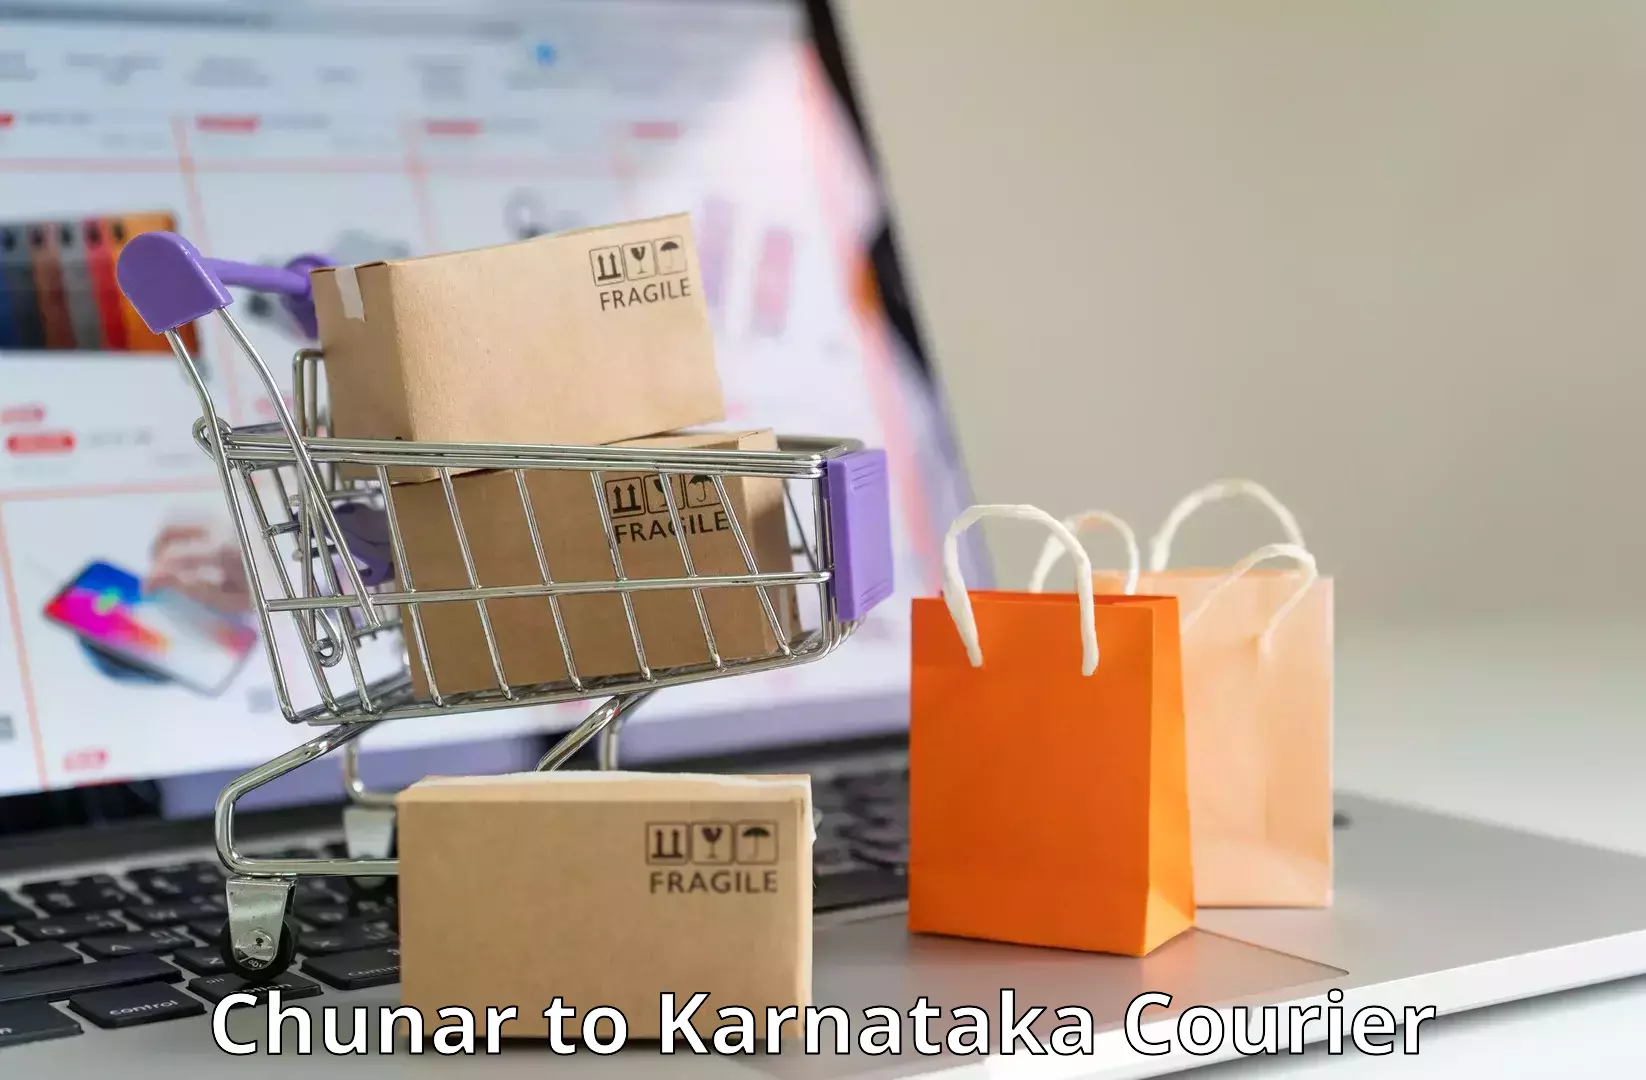 Global shipping networks Chunar to Karnataka